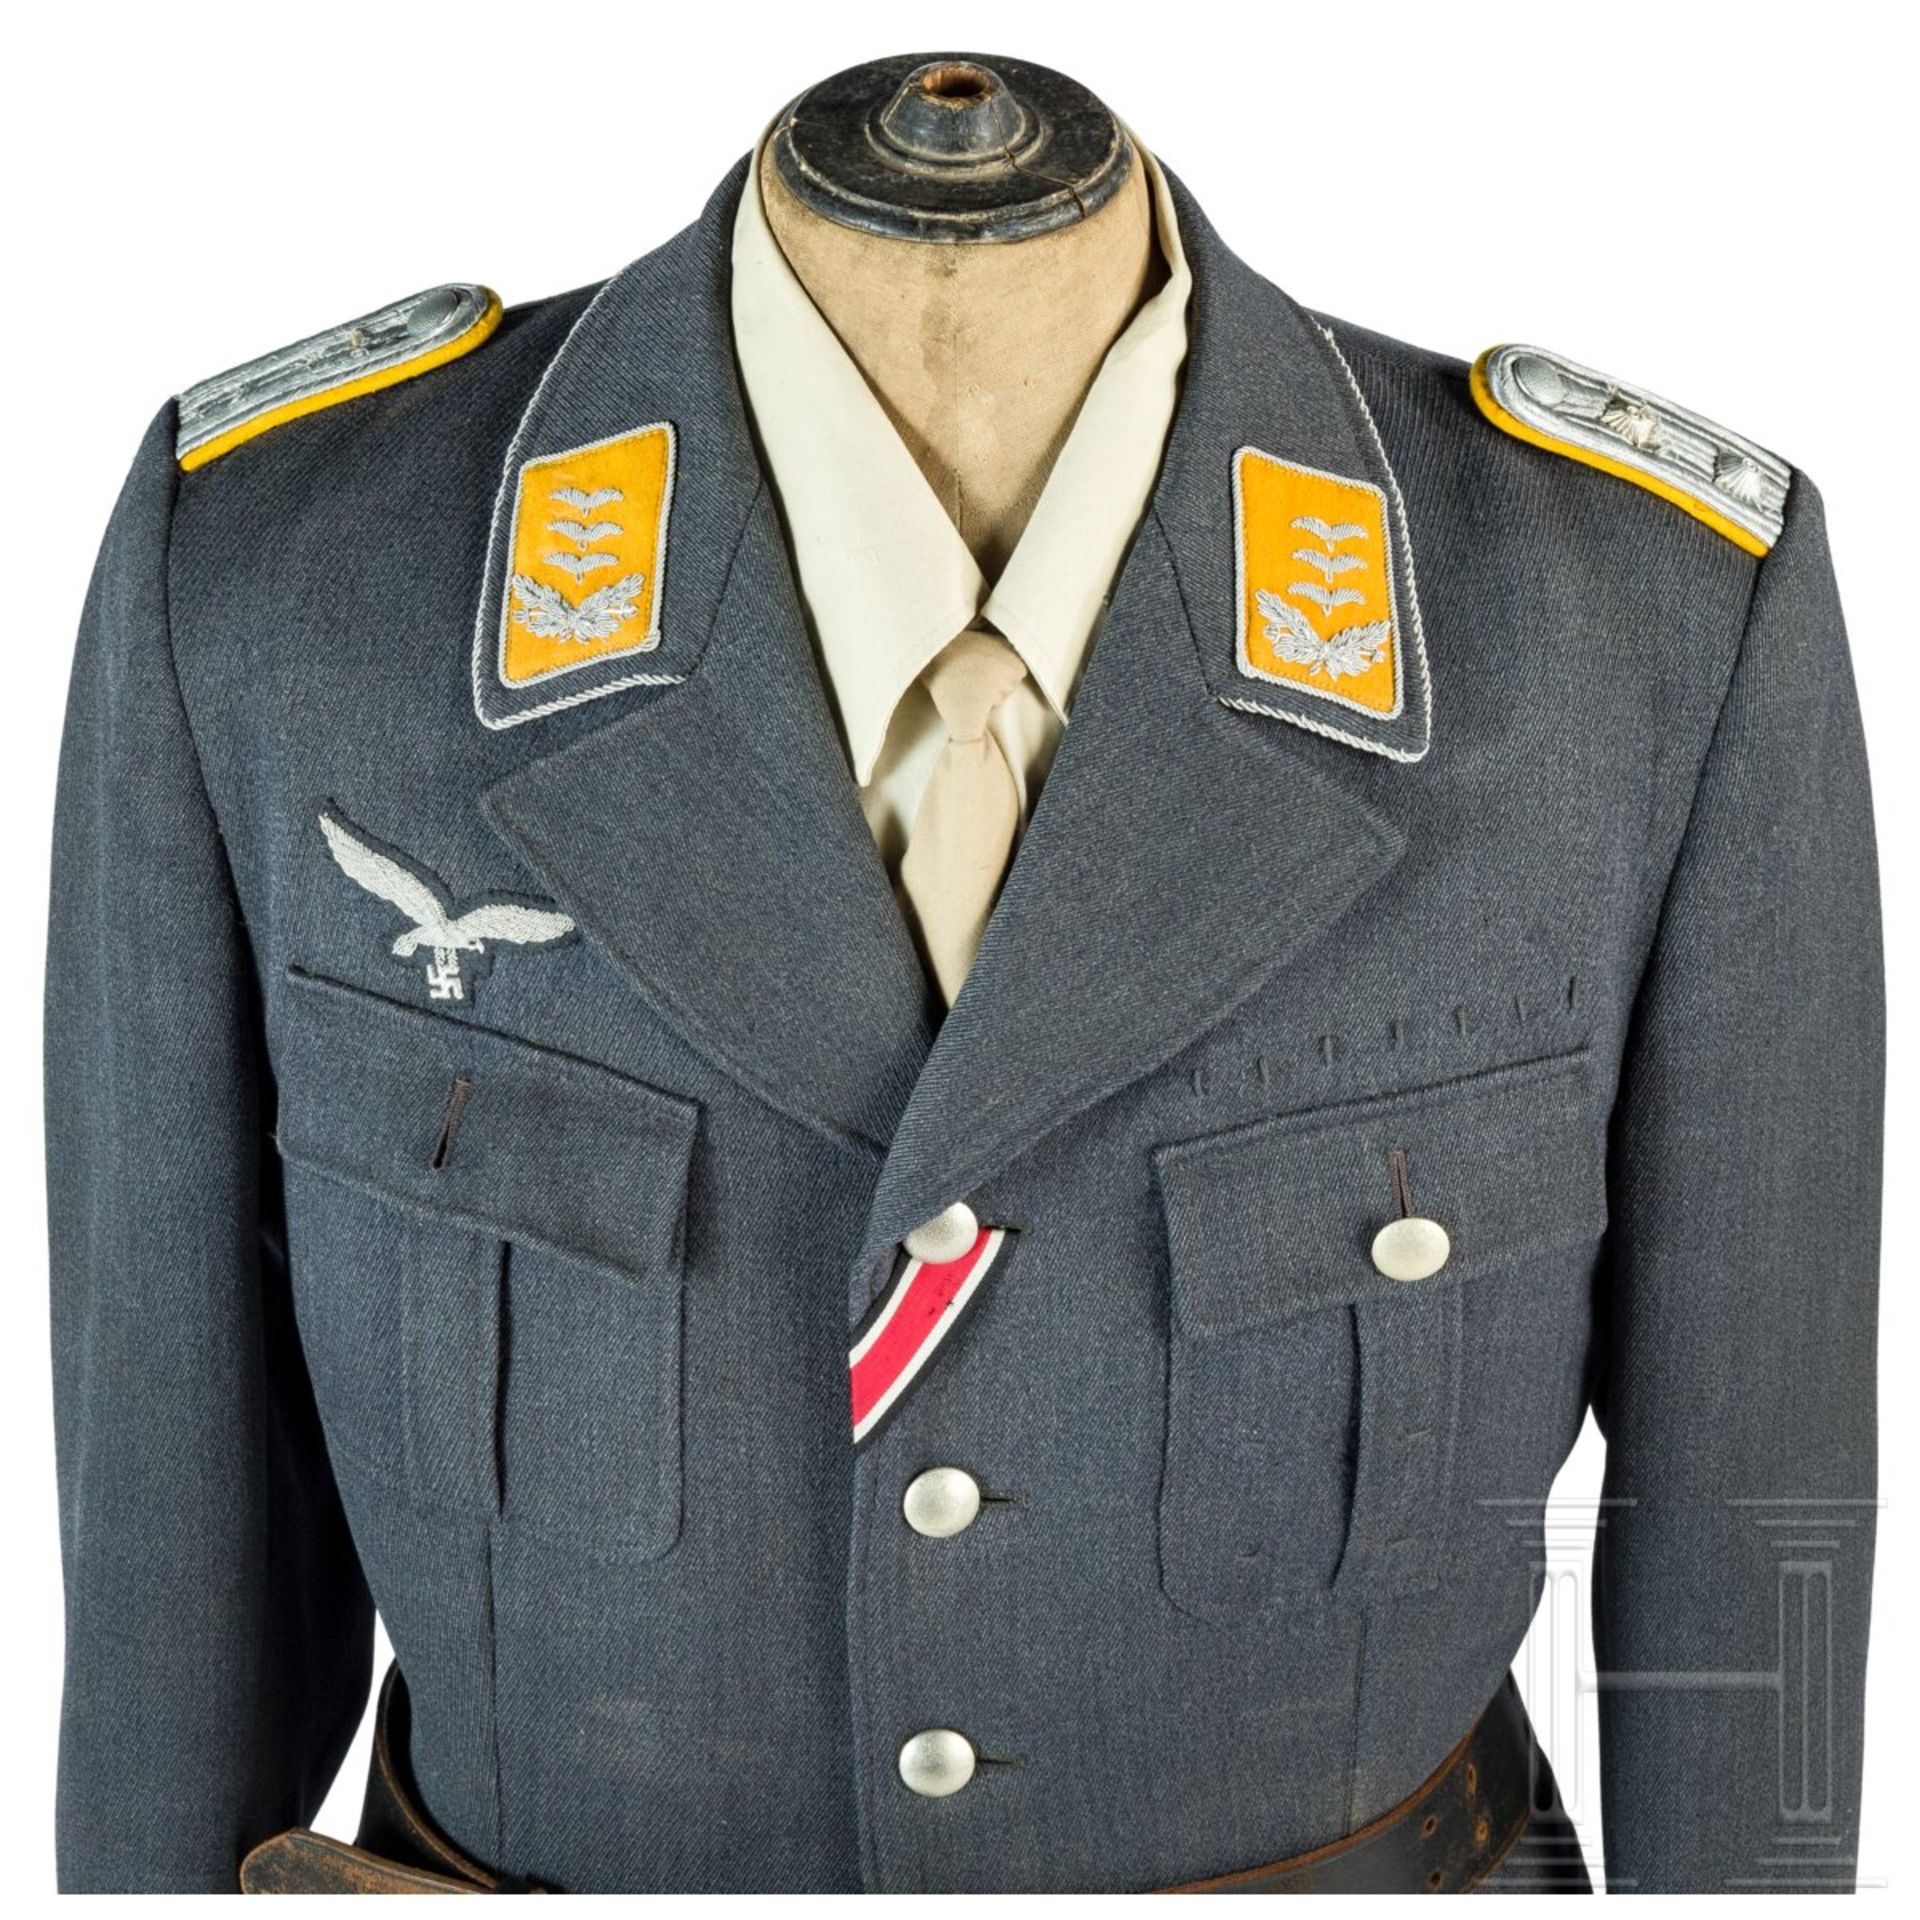 Uniformensemble für einen Hauptmann der Flieger- oder Fallschirmtruppe - Image 2 of 9